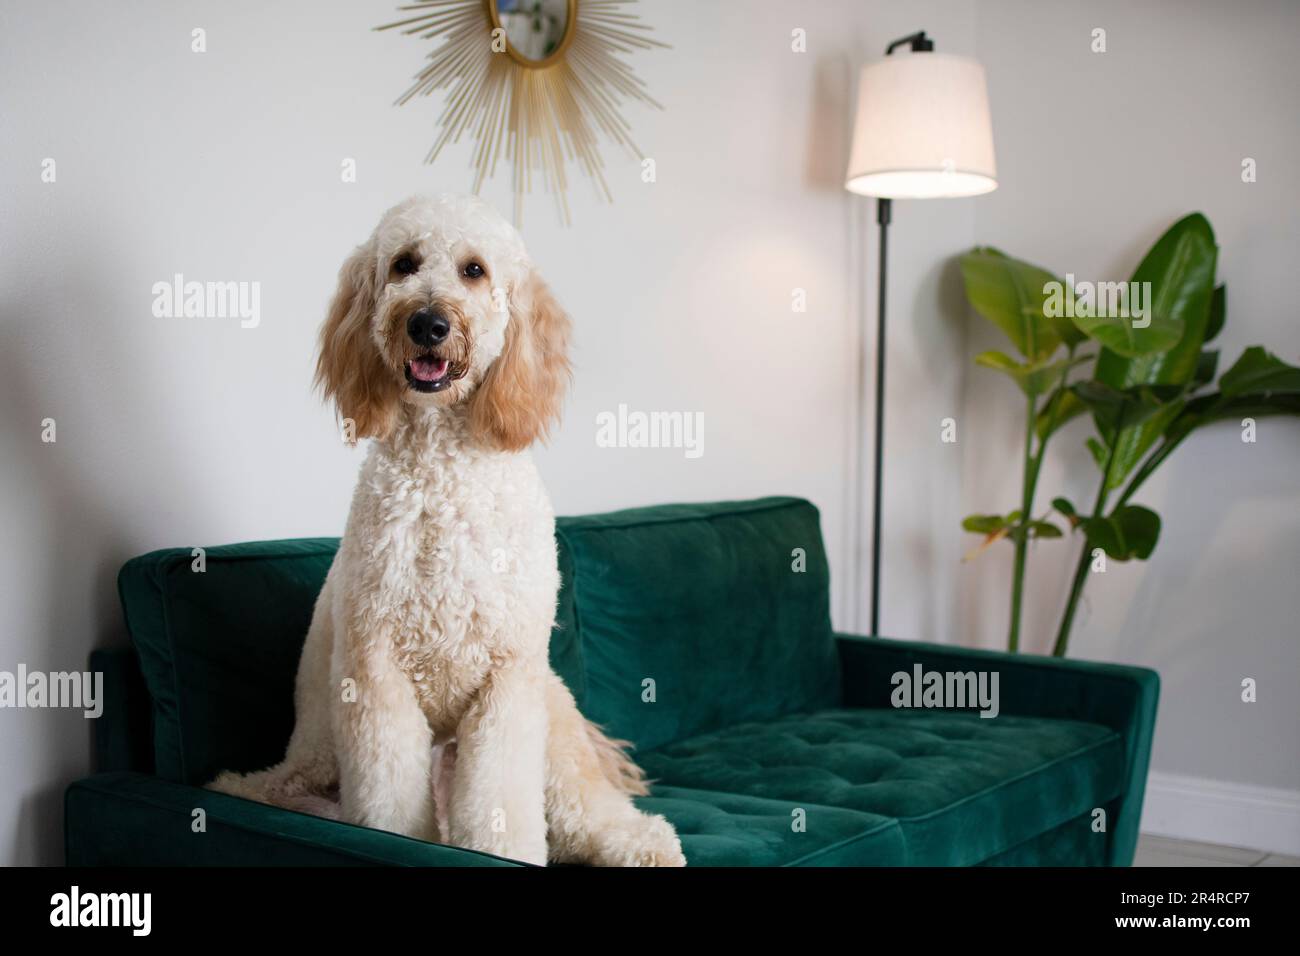 Porträt eines riesigen weißen Hundes Goldendoodle, der auf einer grünen Samtcouch sitzt Stockfoto